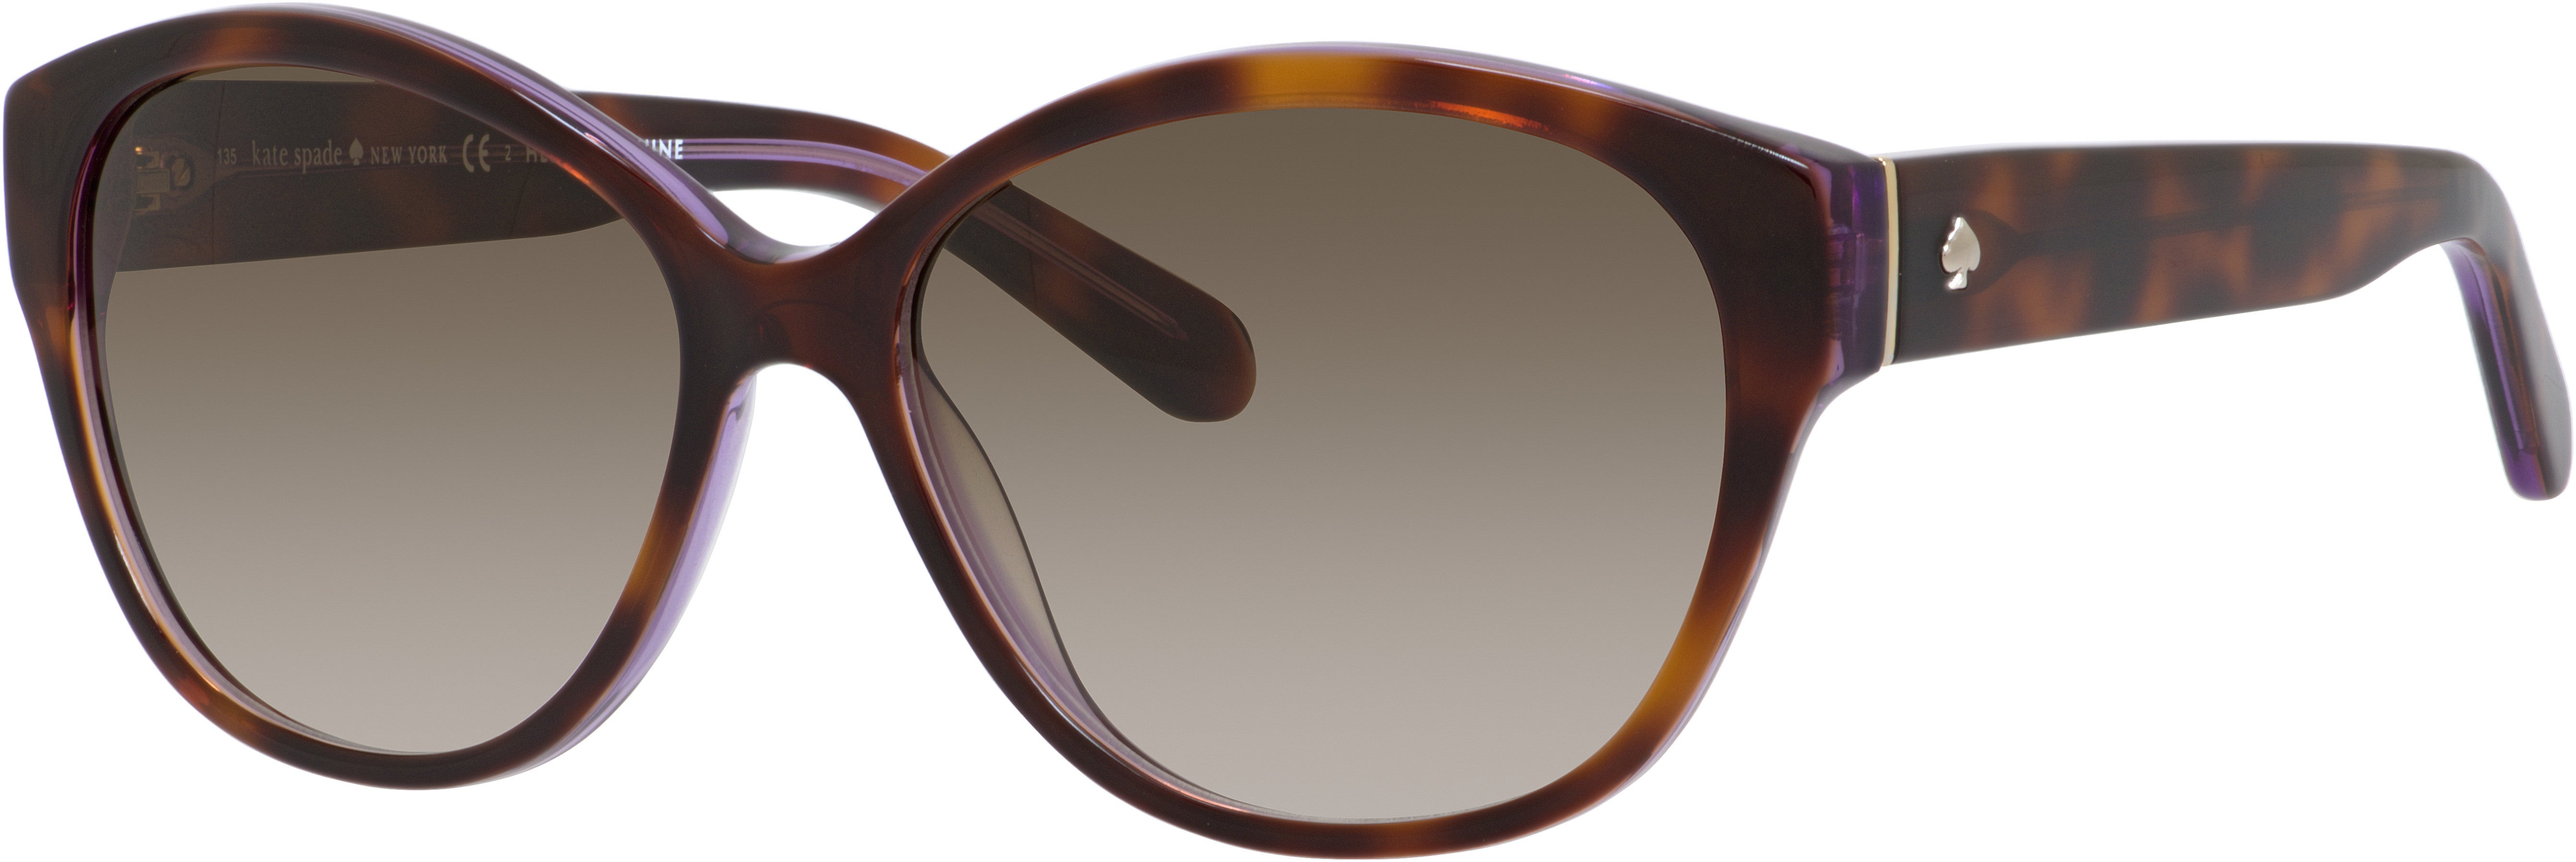 Kate Spade Kiersten 2/S Oval Sunglasses 0W36-0W36  Purple Tortoise (Y6 Brown Gradient)